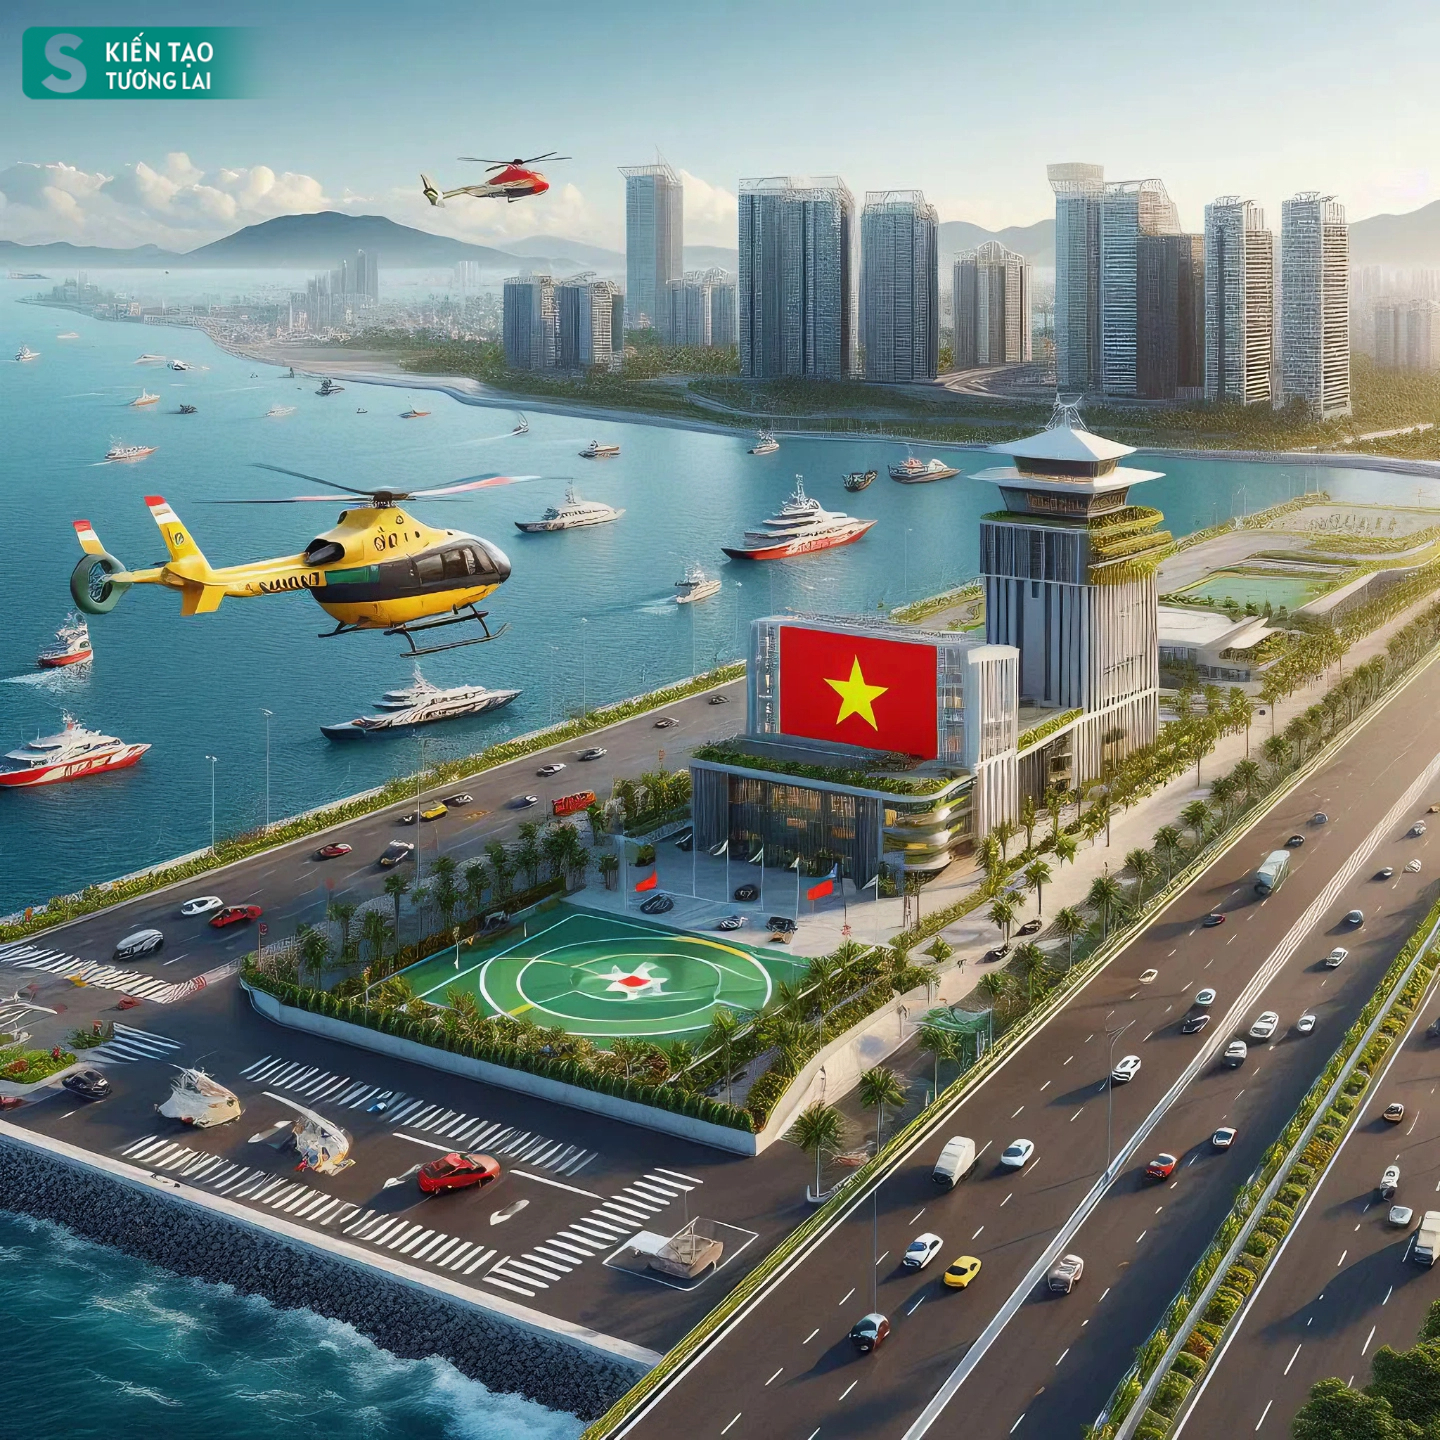 Thành phố duy nhất ở Việt Nam giáp Trung Quốc có biển, tương lai có sân bay taxi, đường sắt hiện đại- Ảnh 10.